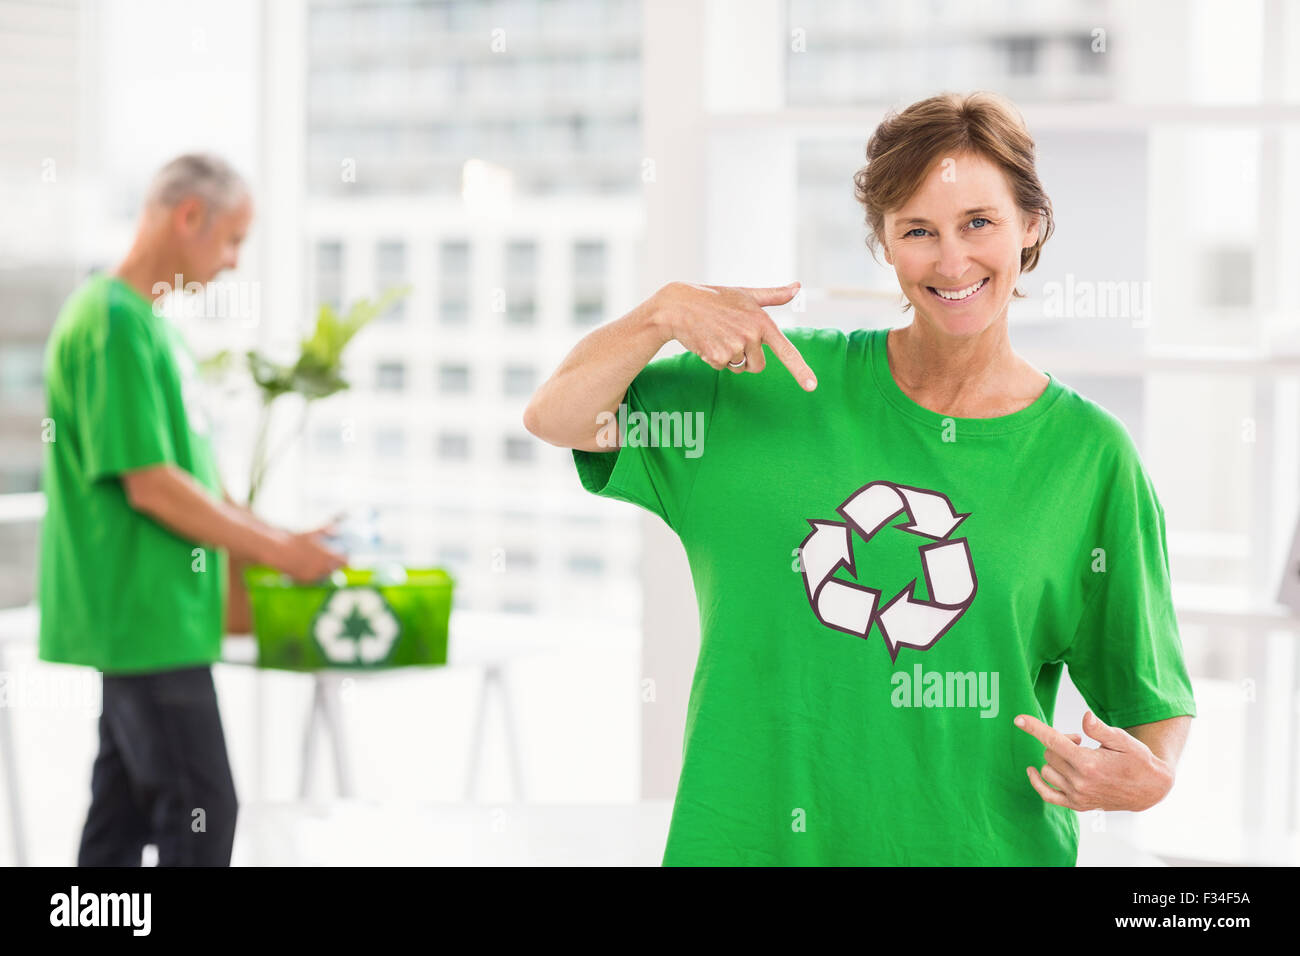 Femme d'esprit éco-sourire montrant sa chemise de recyclage Banque D'Images